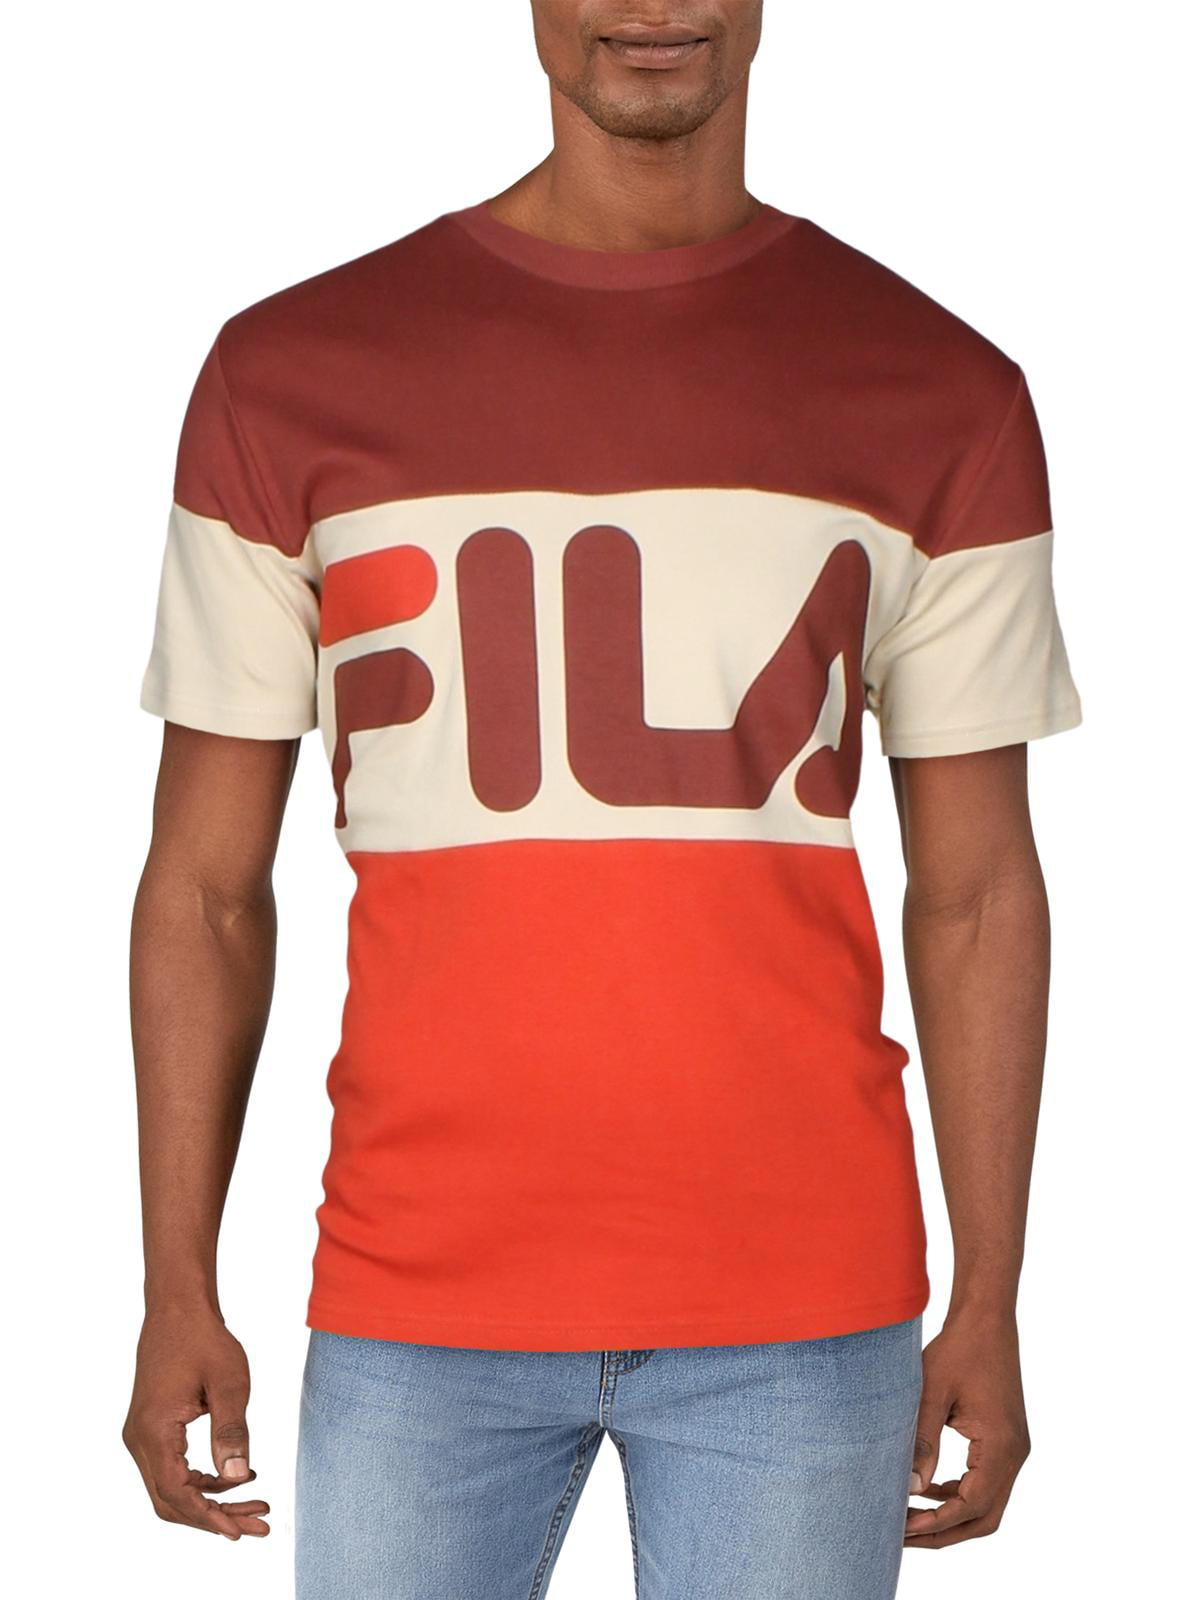 FILA Mens Activewear - Walmart.com